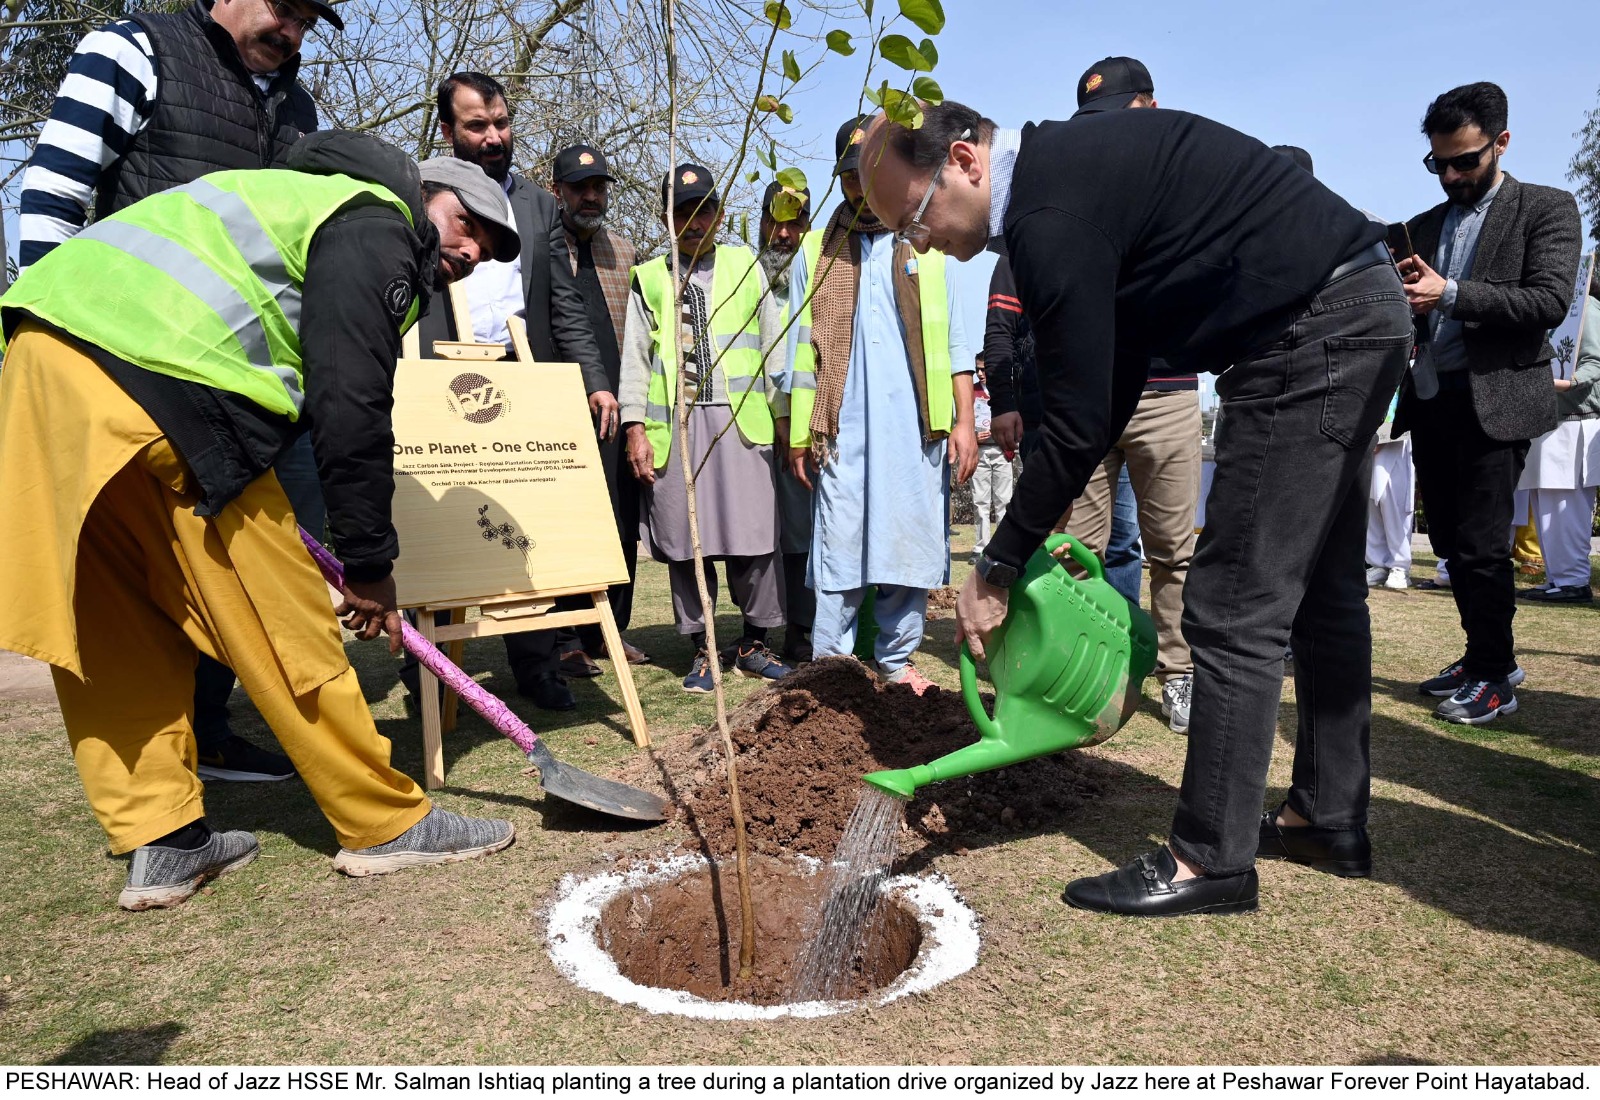 جاز نے اپنے کاربن سنک پروجیکٹ کے حصے کے طور پر پشاور میں درخت لگانے کی مہم کا انعقاد کیا